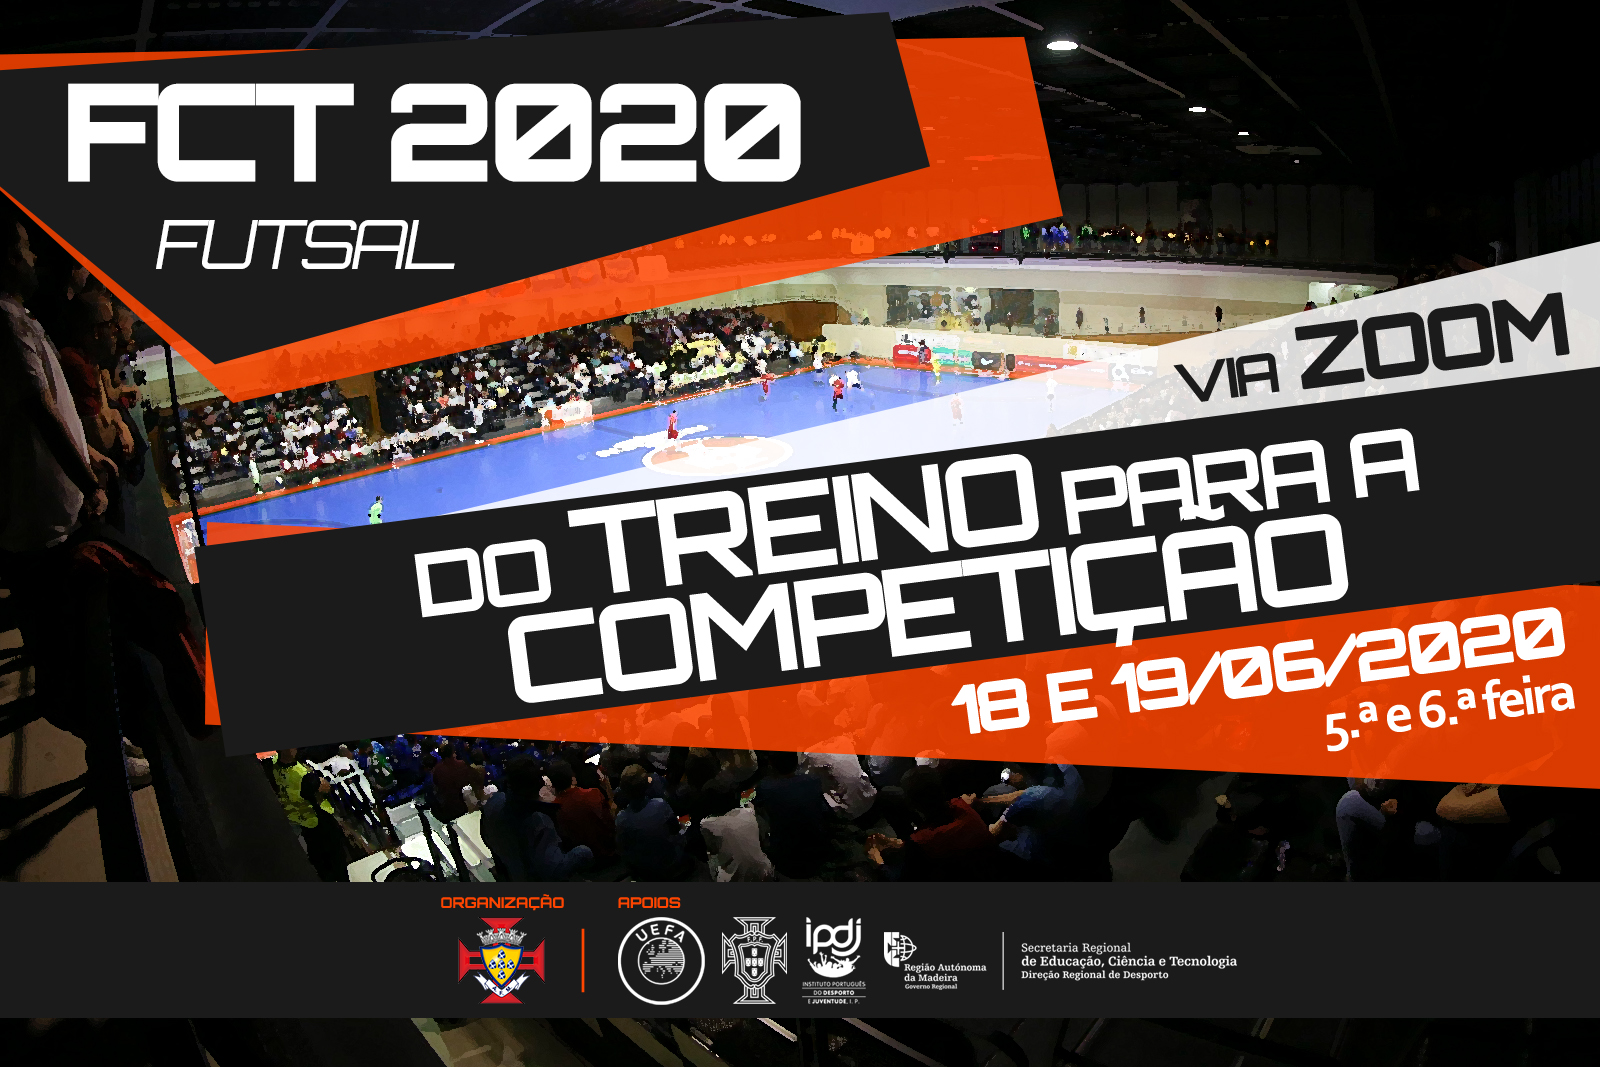 Formação Contínua de Treinadores de Futsal pautada pela qualidade